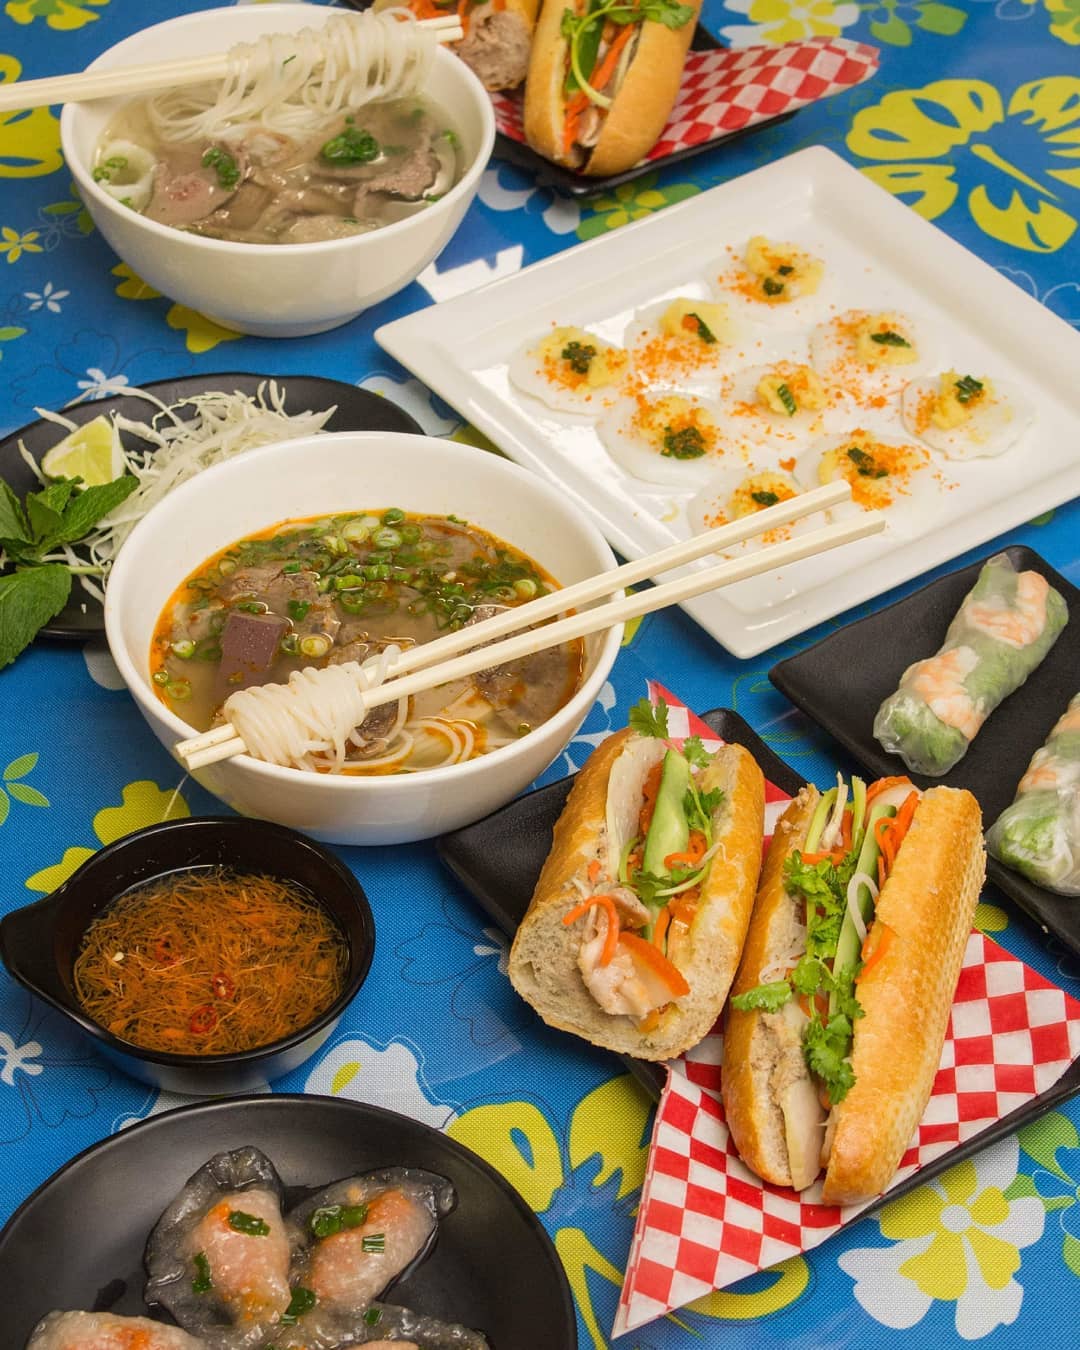 Tâm Vietnamese Street Food and Café